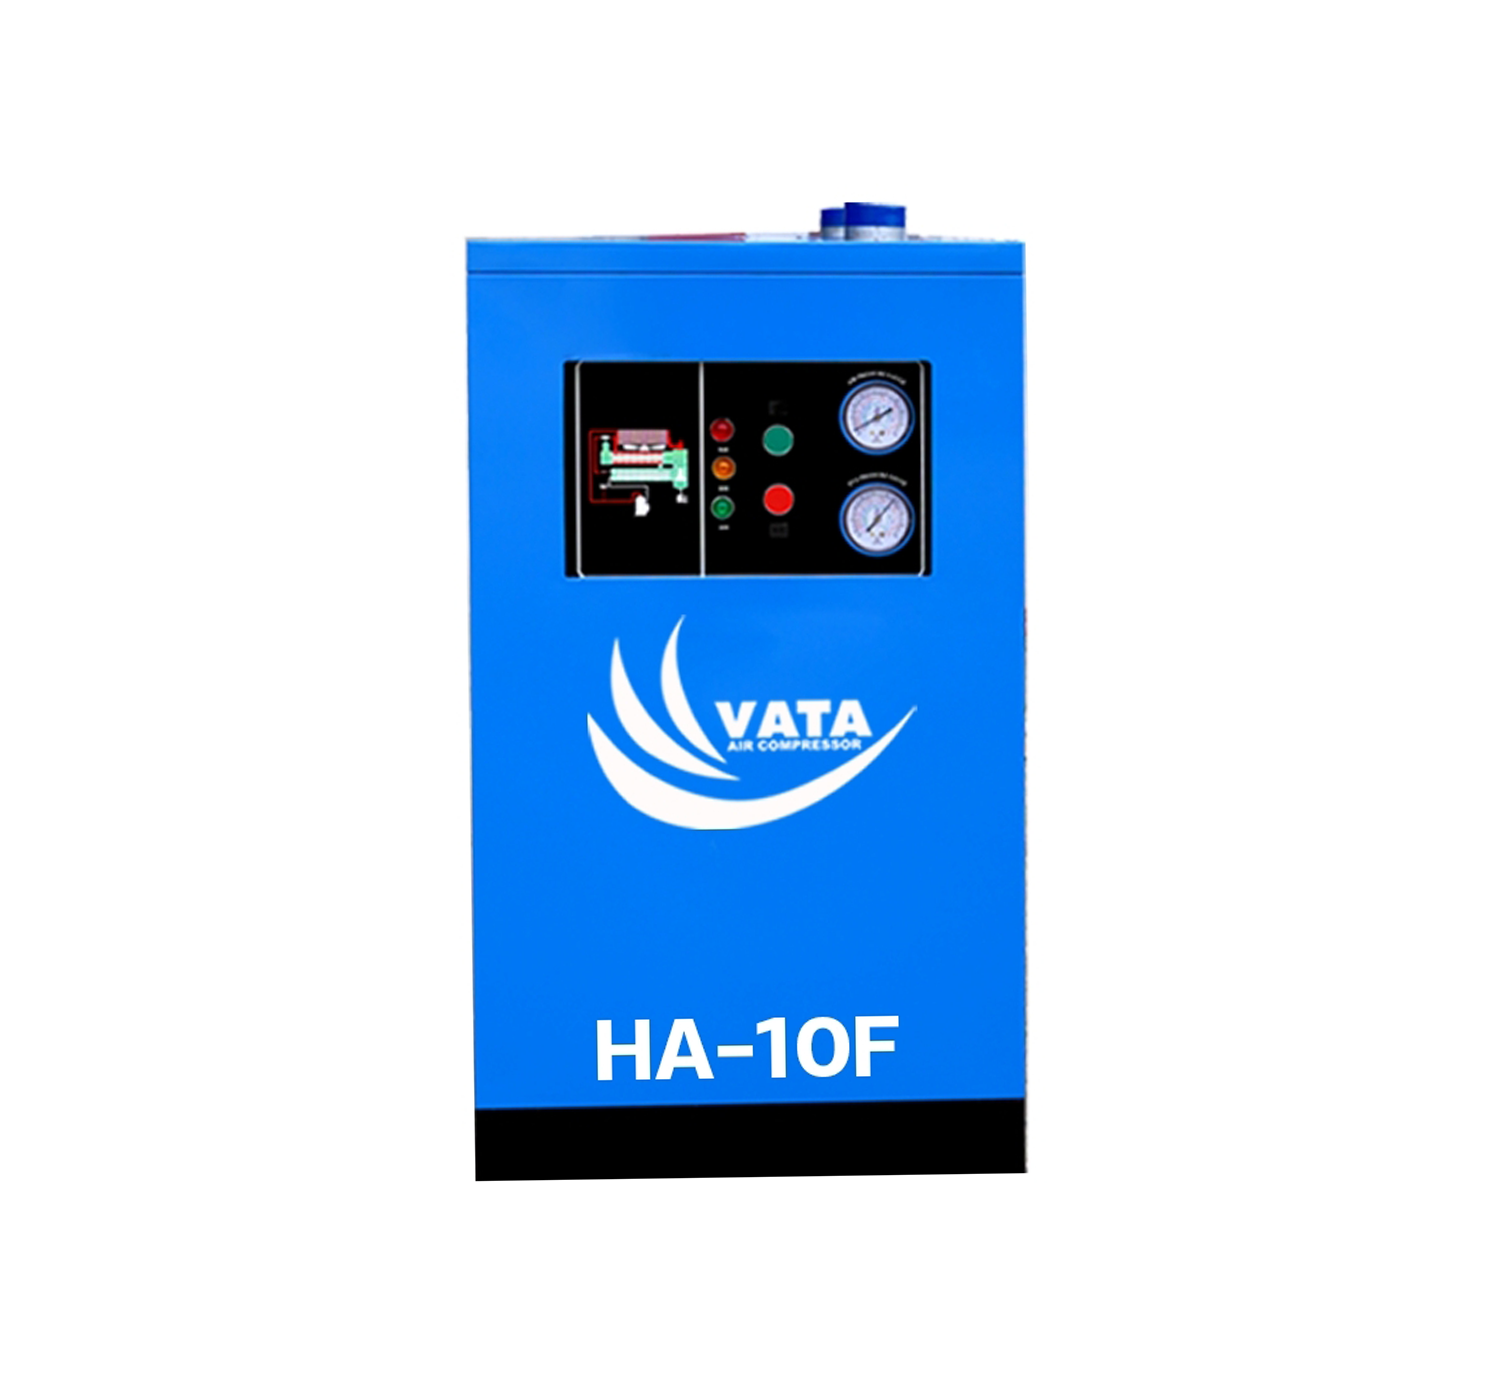 เครื่องทำลมแห้ง Refrigerated Air Dryer แบรนด์ VATA รุ่น HA-10F ขนาด 0.4 kw. ไฟฟ้า 220V รับประกันสินค้า 1 ปี ตามเงื่อนไขของบริษัทฯ